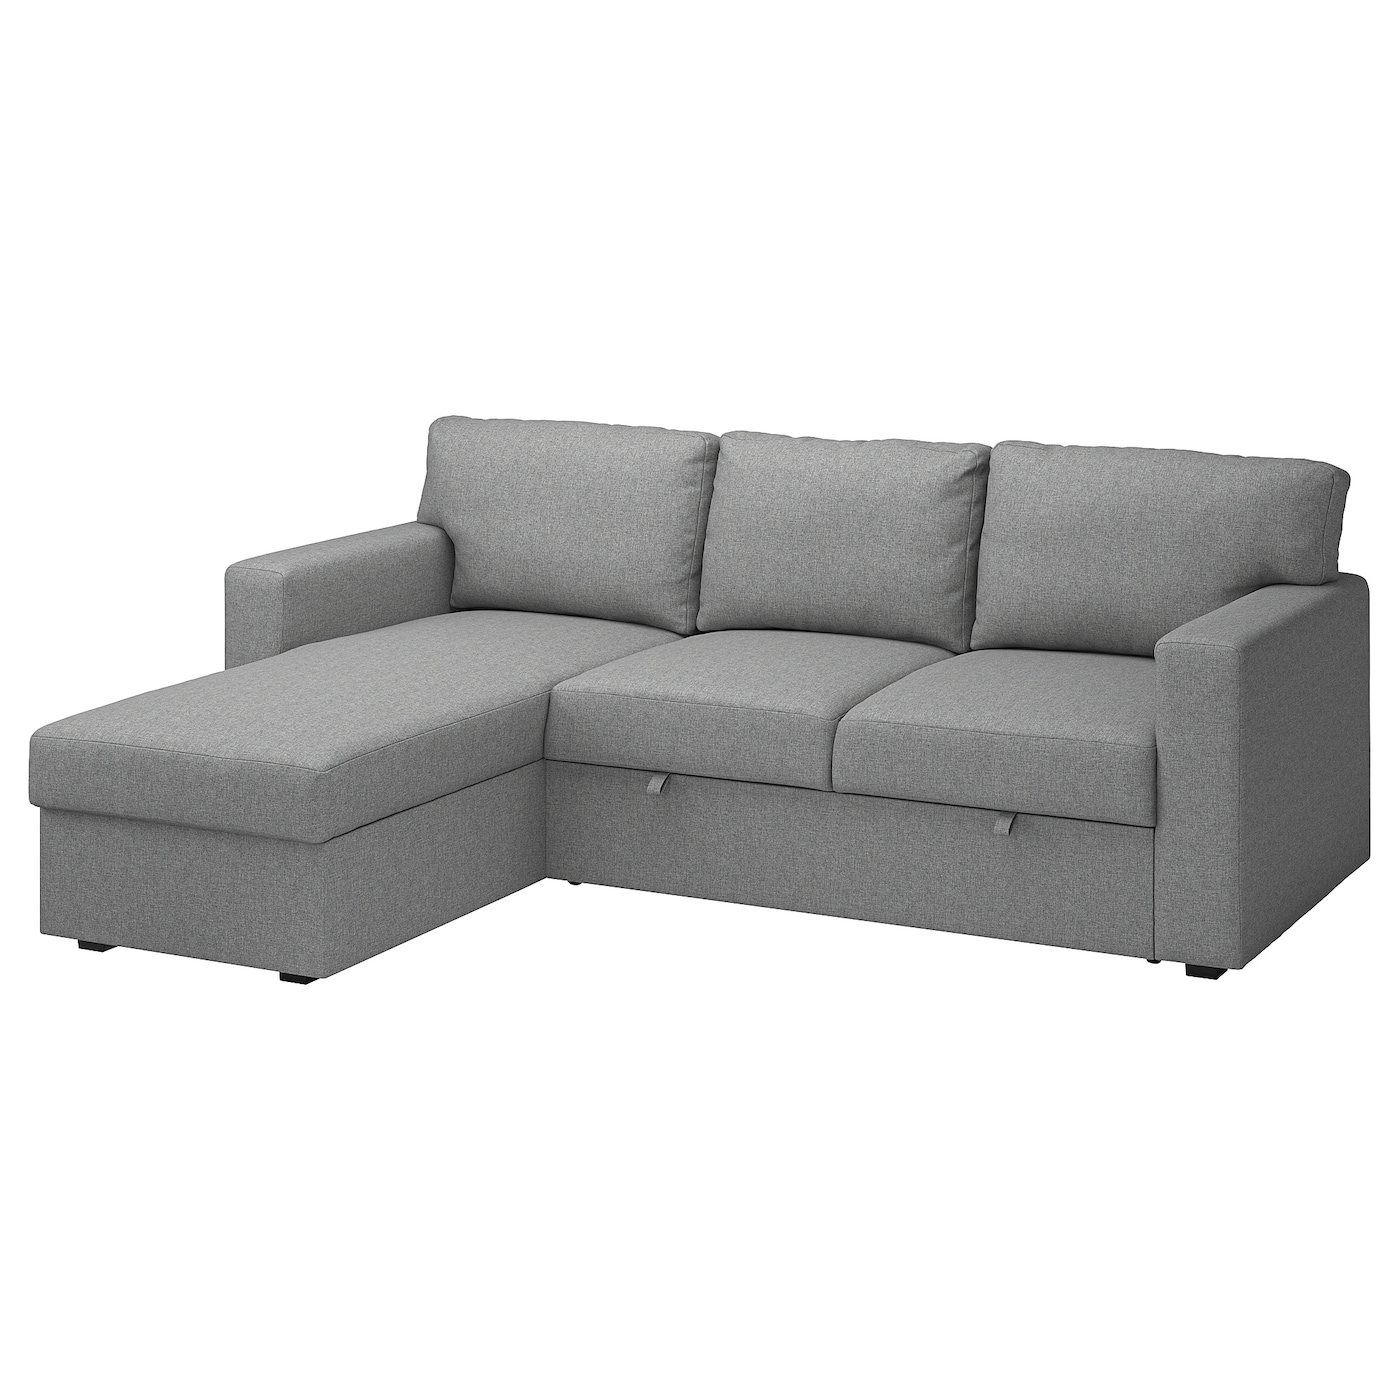 БОРСЛОВ 3-местный диван-кровать + диван, Тибблби бежевый/серый BÅRSLÖV IKEA диван кровать дилан тд 422